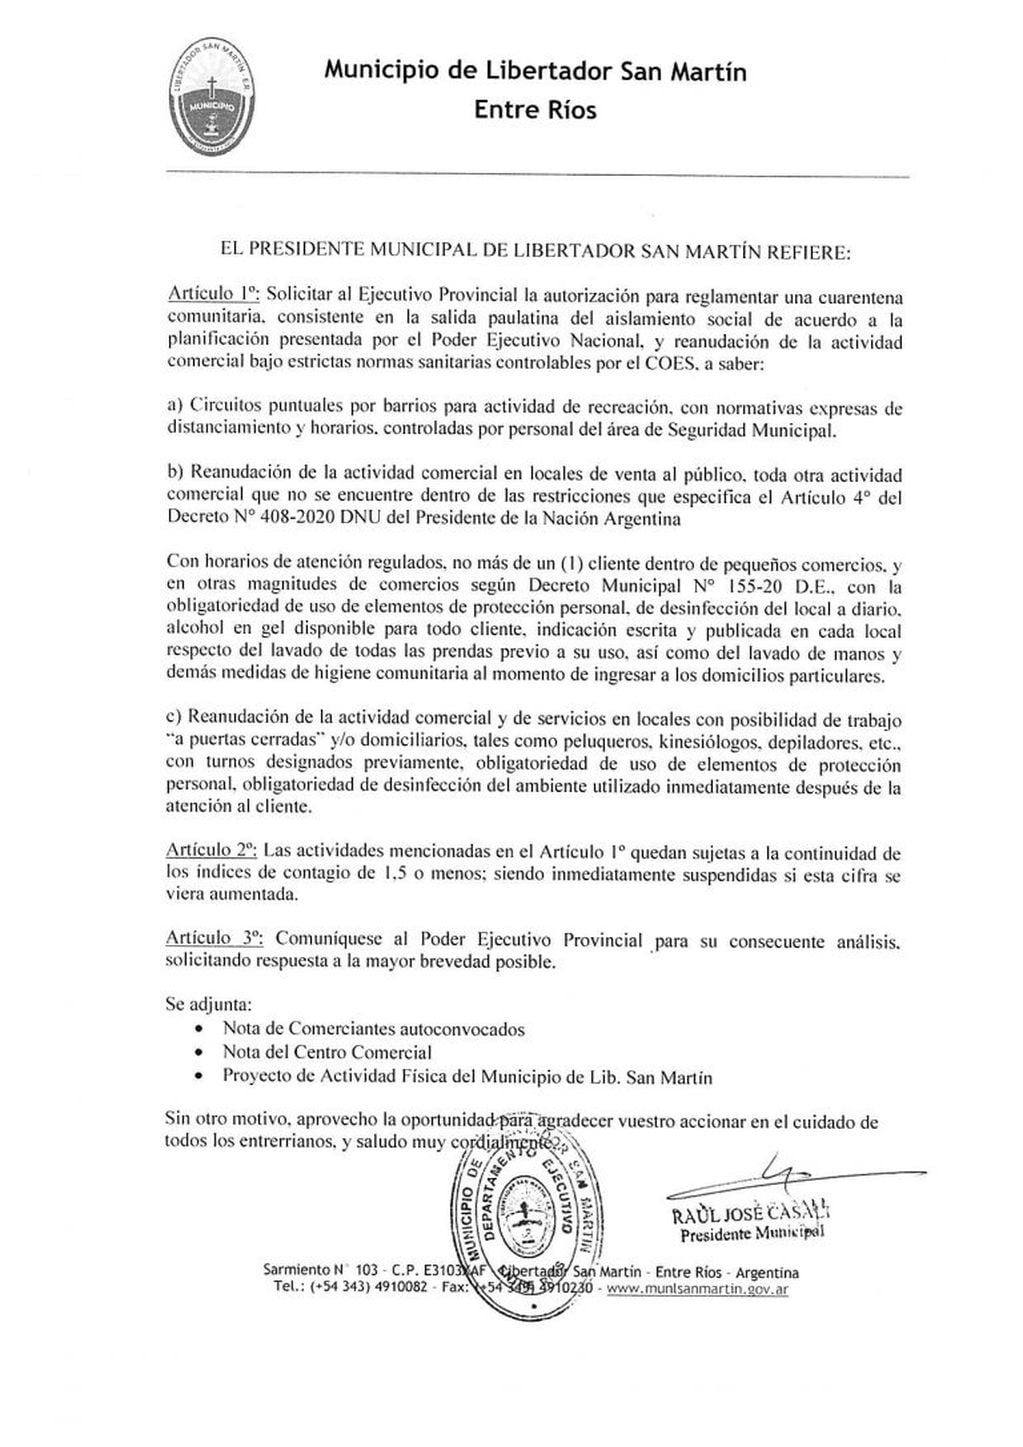 Nota del Intendente de Libertador San Martín enviada al Gobernador Bordet.